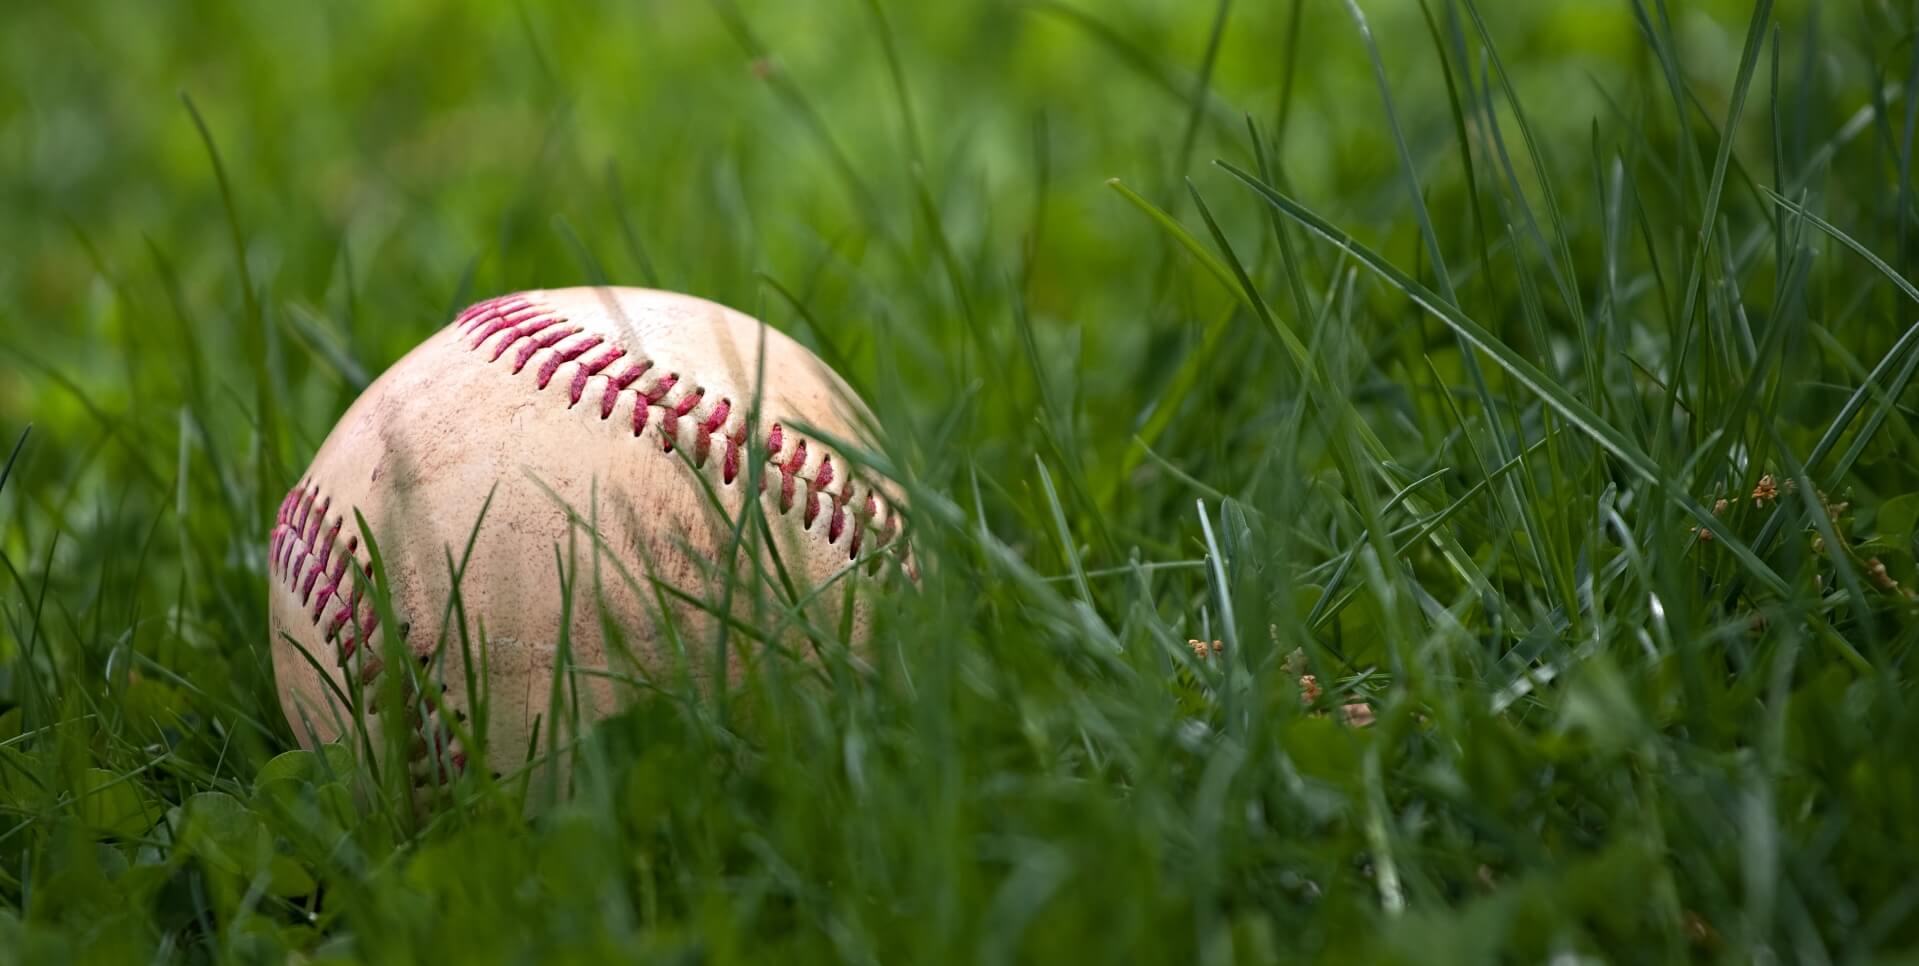 Baseball in grass.